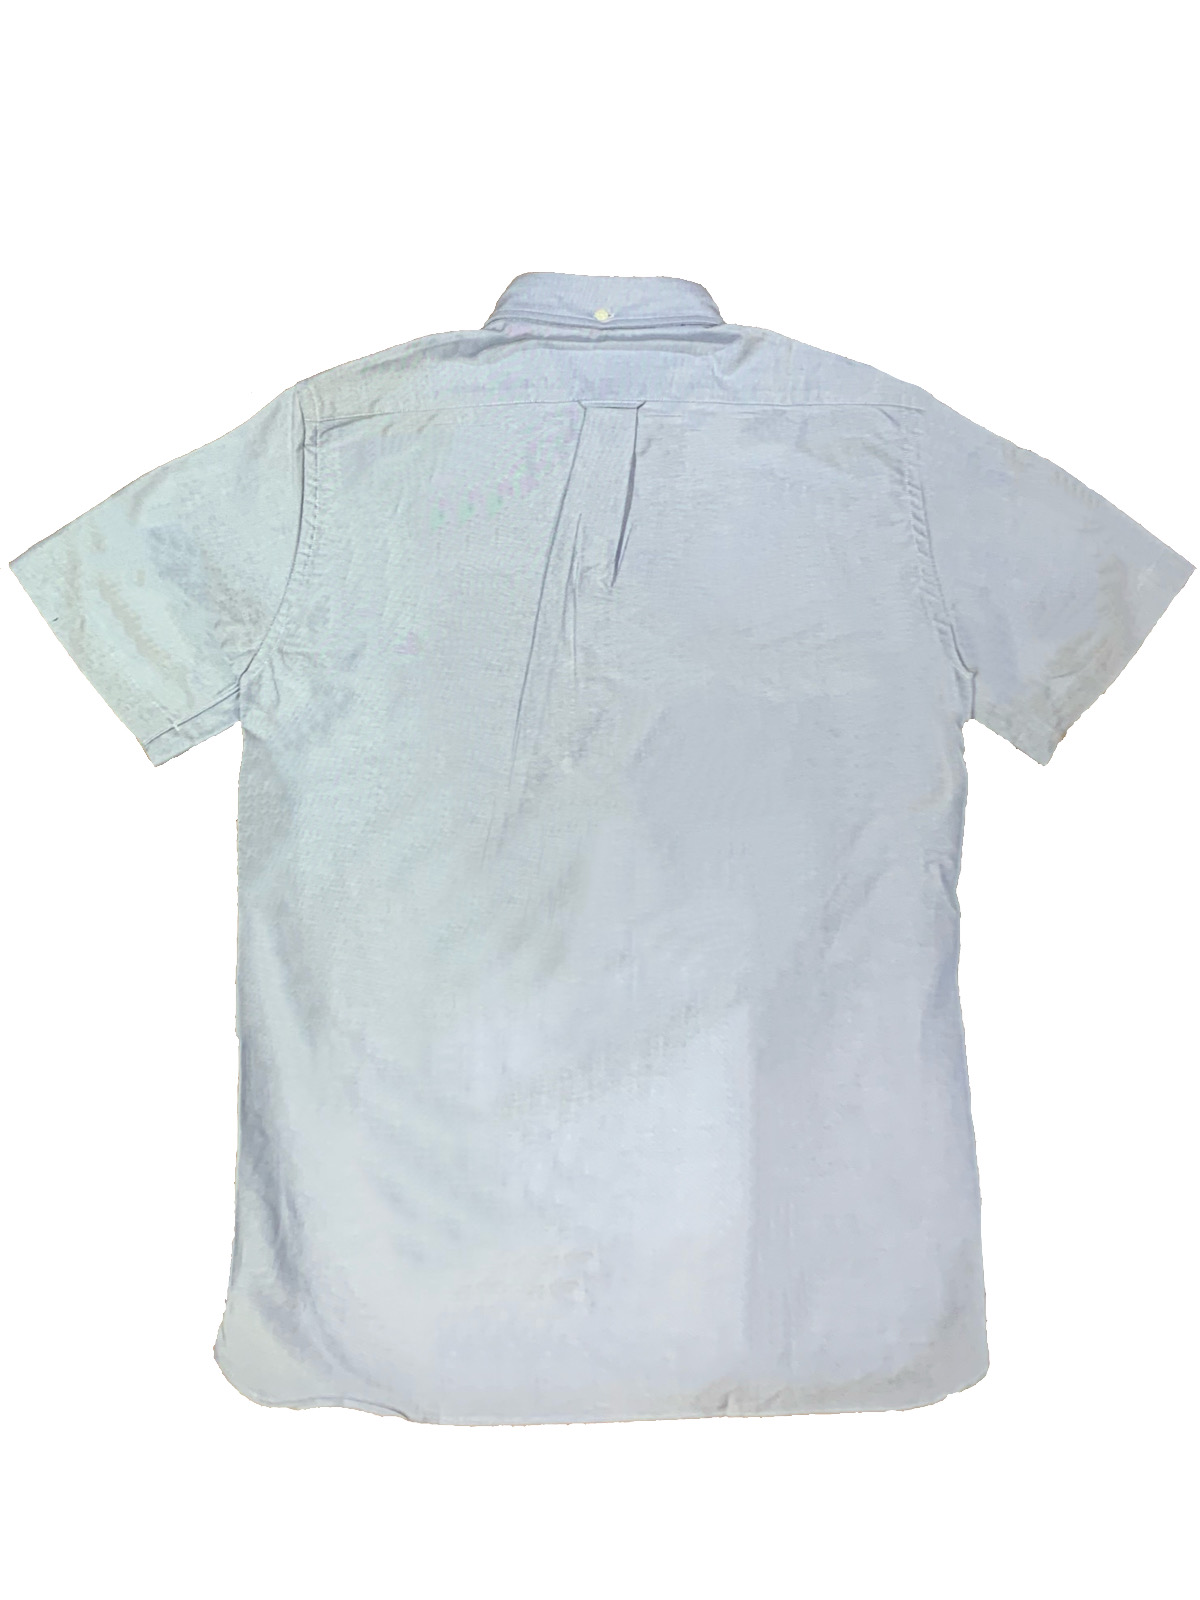 Hummingbirds'hill shop / IKE BEHAR Short Sleeve Pullover B.D OX Shirt ...